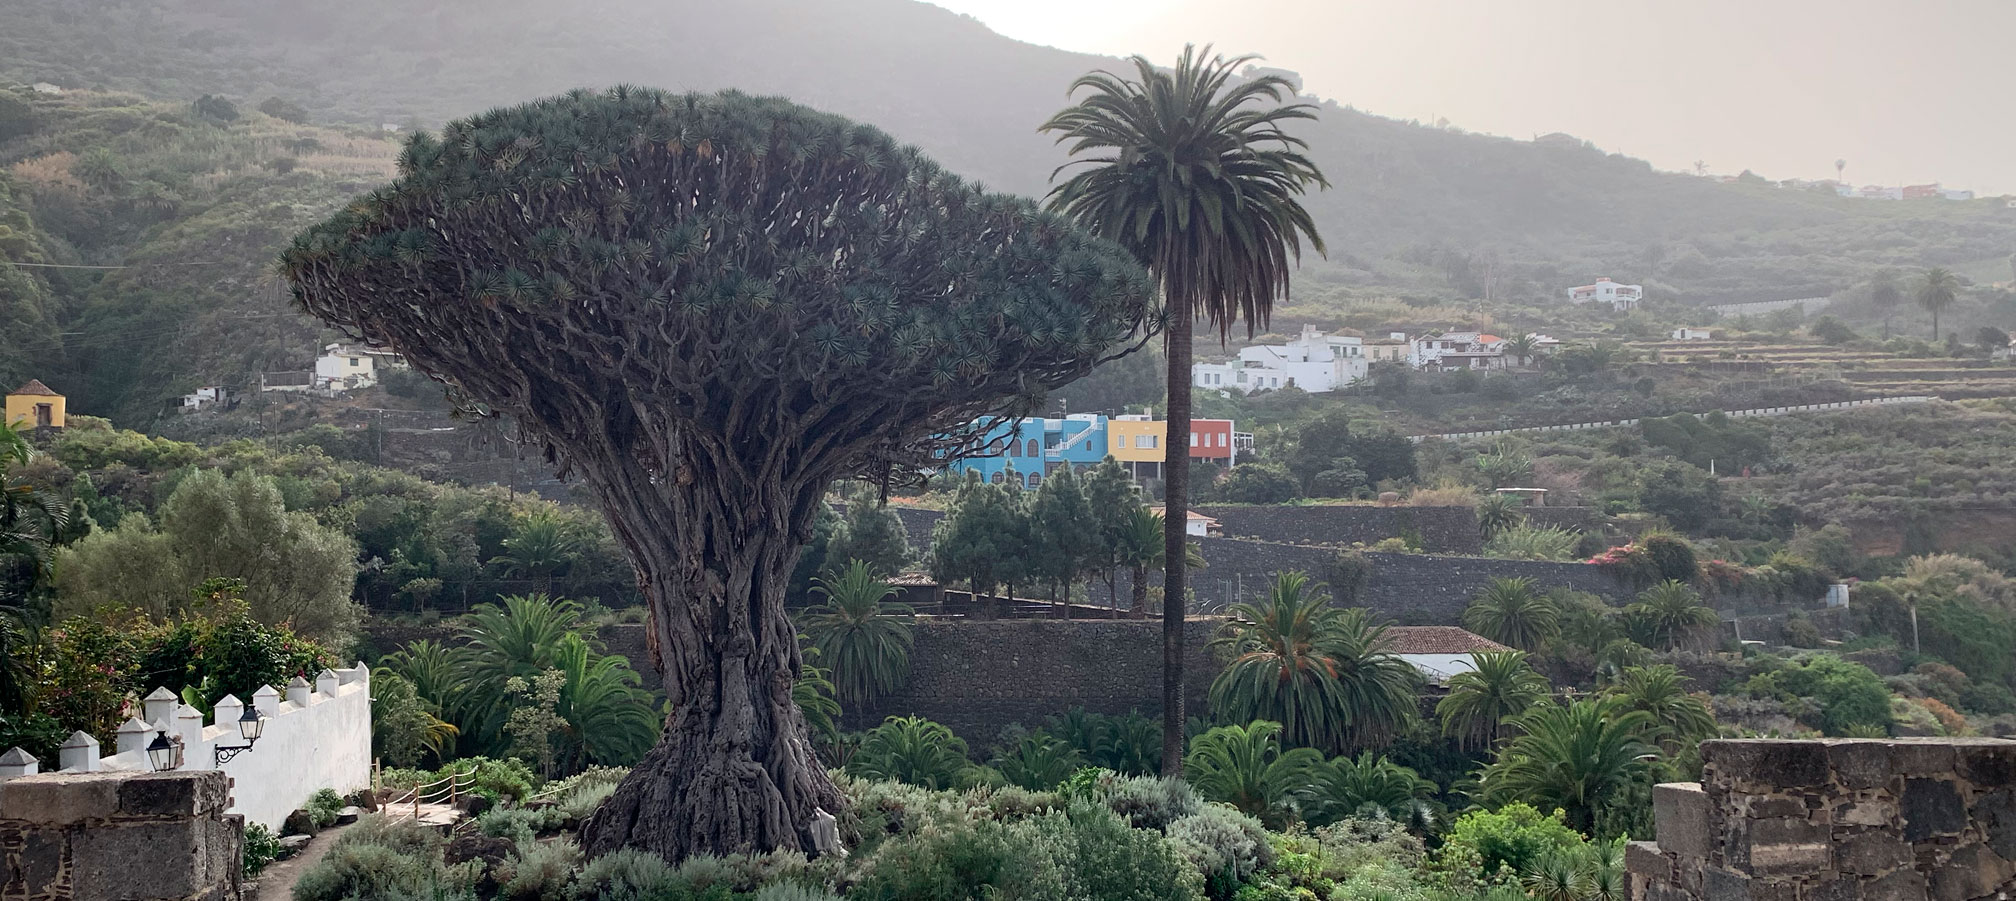 Islas Canarias, Tenerife: Puntos de interés turístico